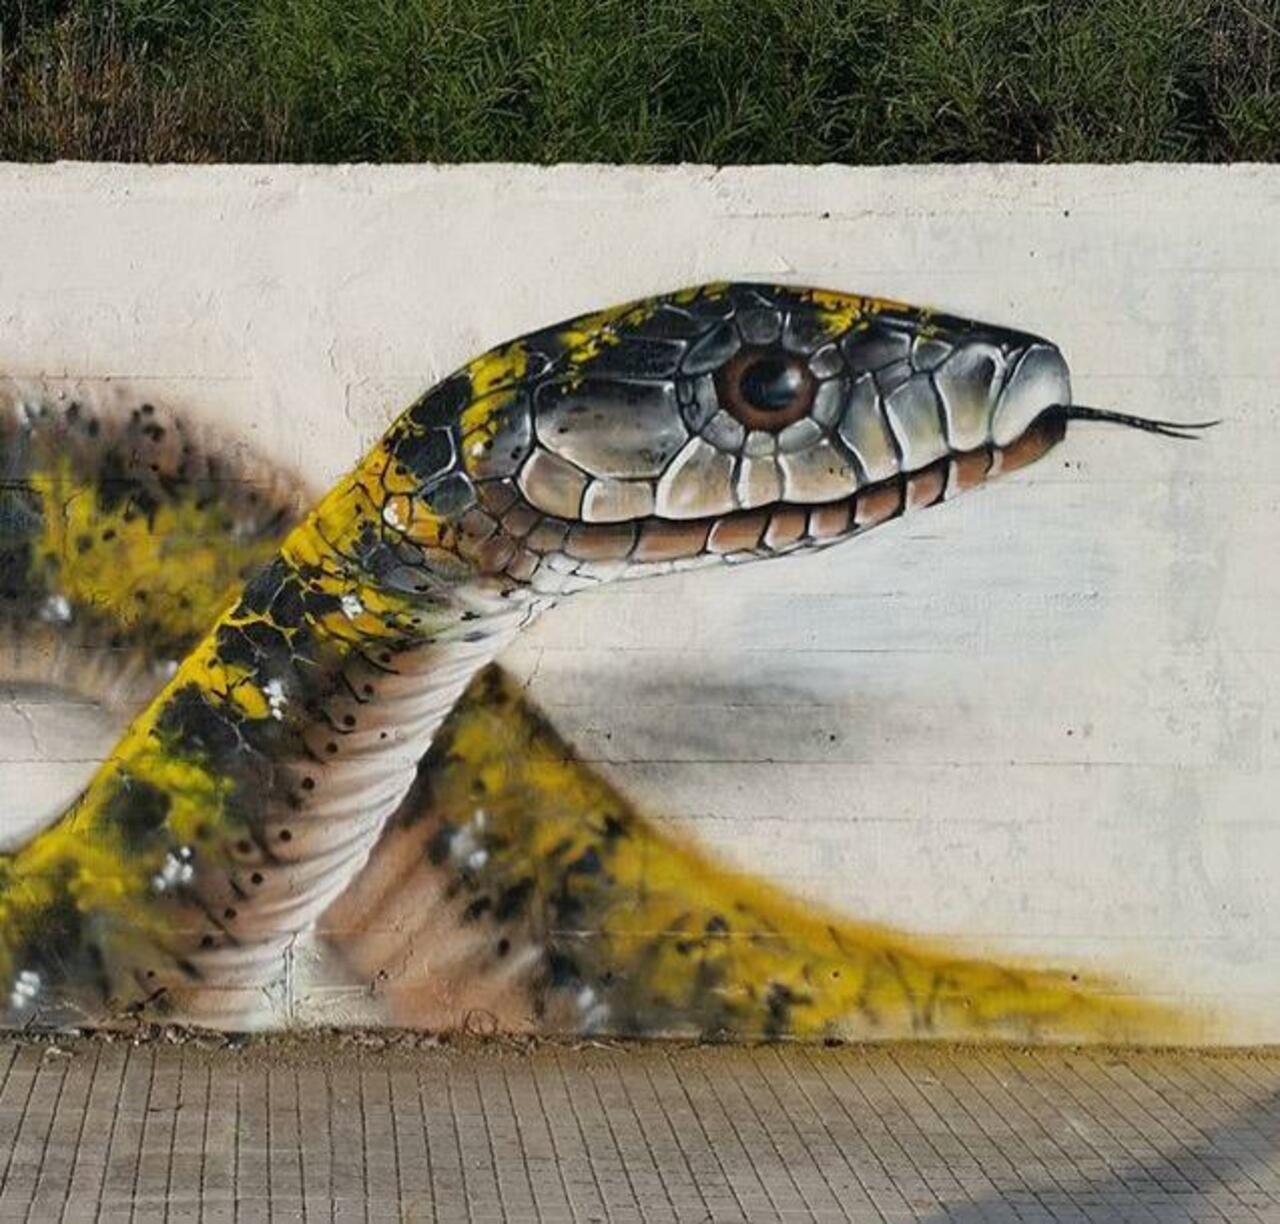 RT belilac "RT belilac "Street Art by Cosimocheone 

#art #graffiti #mural #streetart http://t.co/CcF02EUNeT""